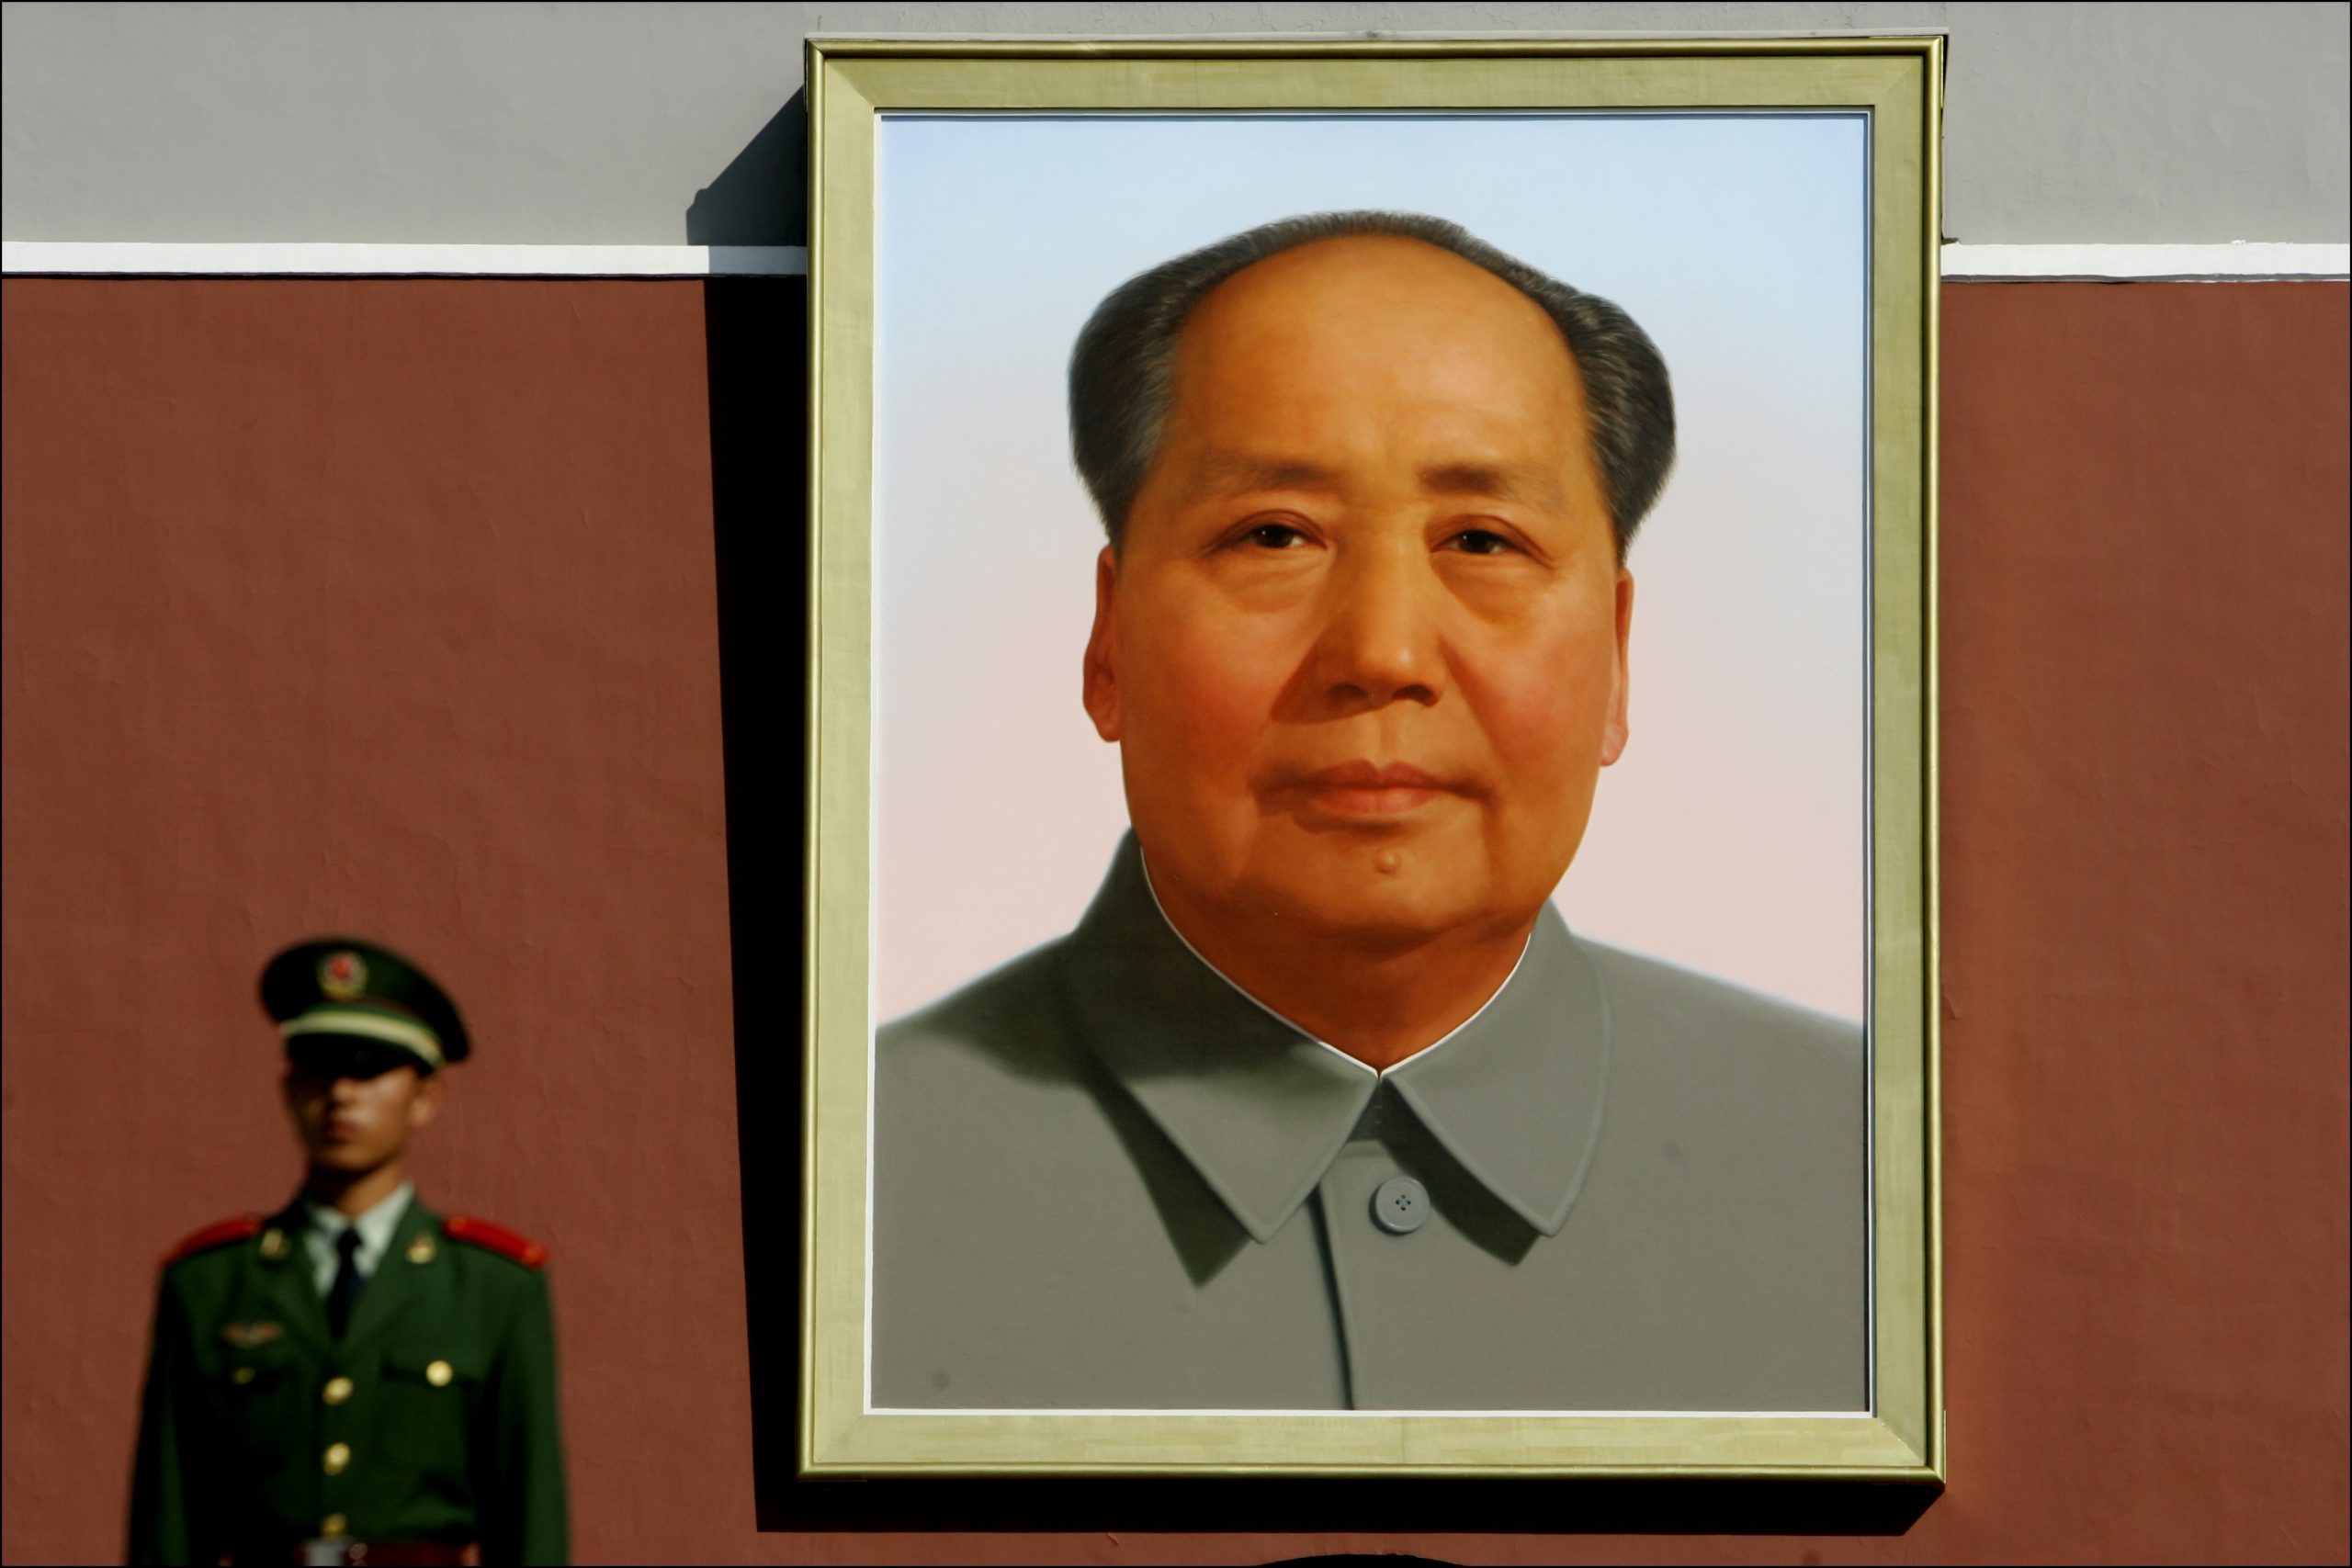 Portret van Mao Zedong, grondlegger van de Volksrepubliek, in de verboden stad in Beijing.